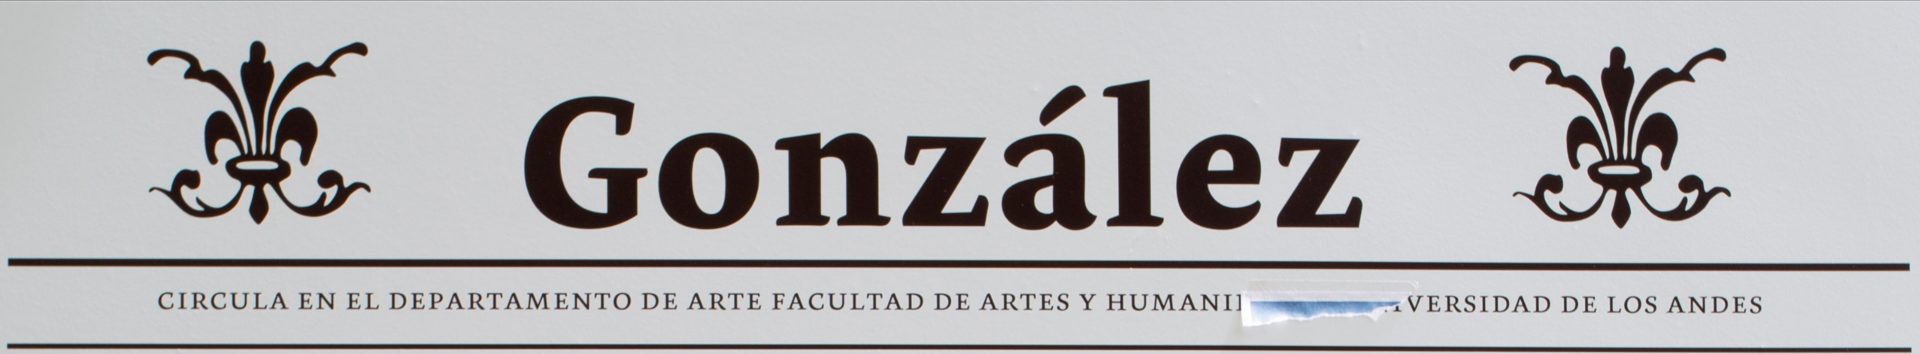 El Departamento de Arte ha pasado por la hoja González desde 2005